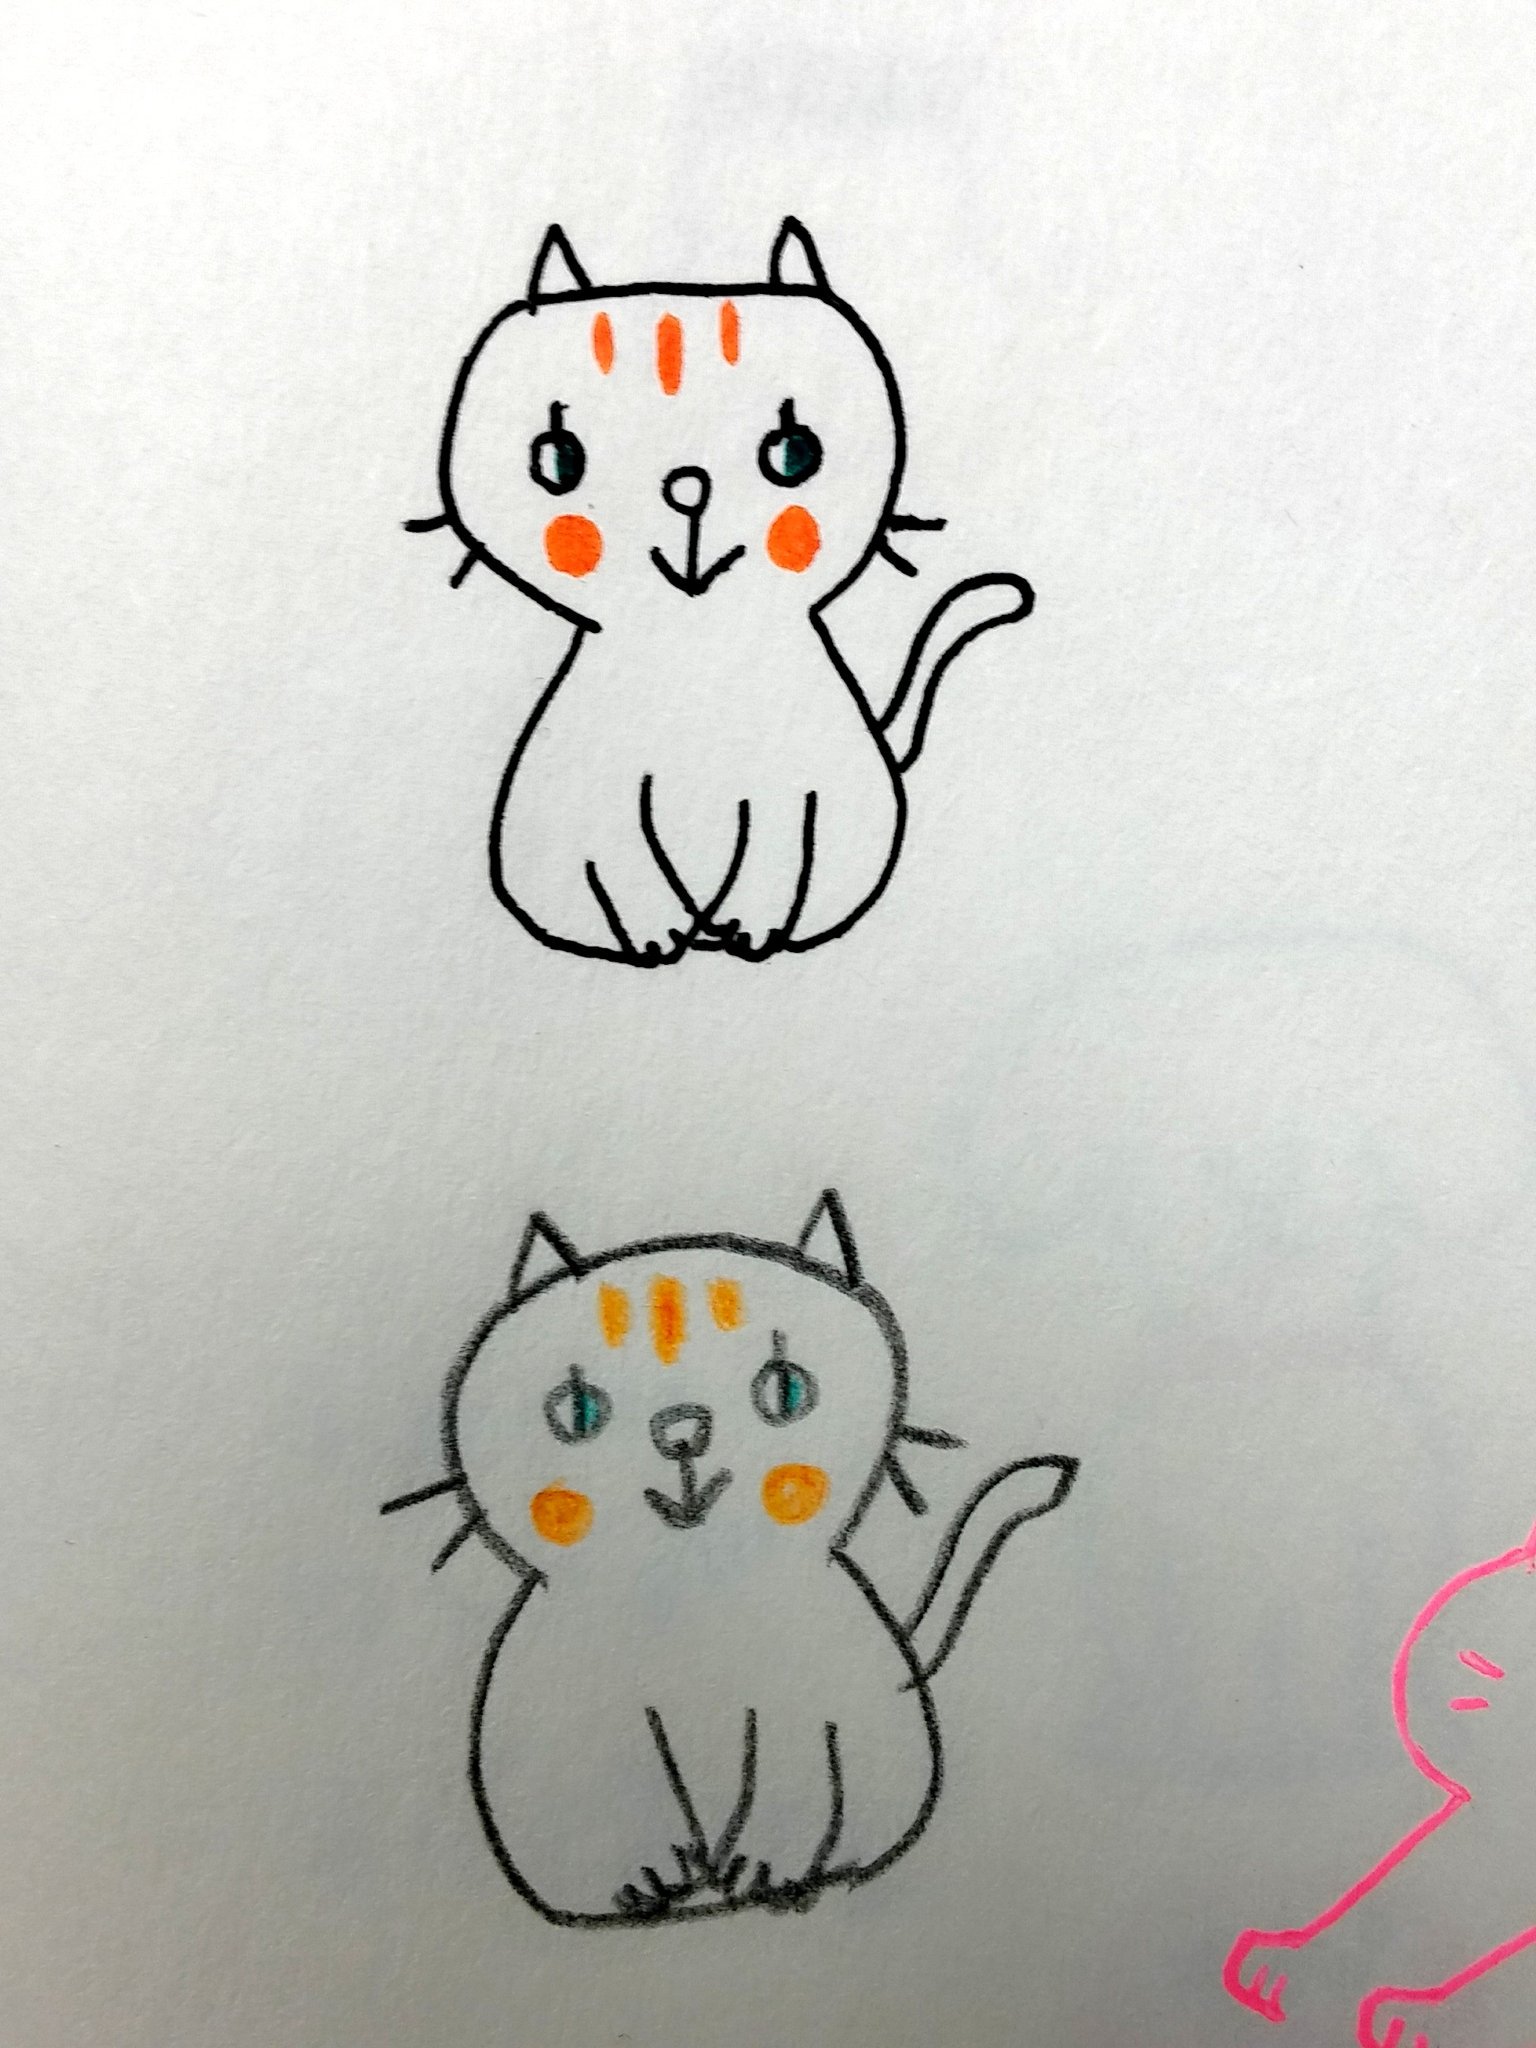 トゥールズ大阪梅田店 على تويتر 猫 犬のボールペンイラスト 両方お取り扱いしております ェ U ェ U バリエーション豊かです 色鉛筆で描いてみても雰囲気変わっていいですよ T Co Yapxj2qygk